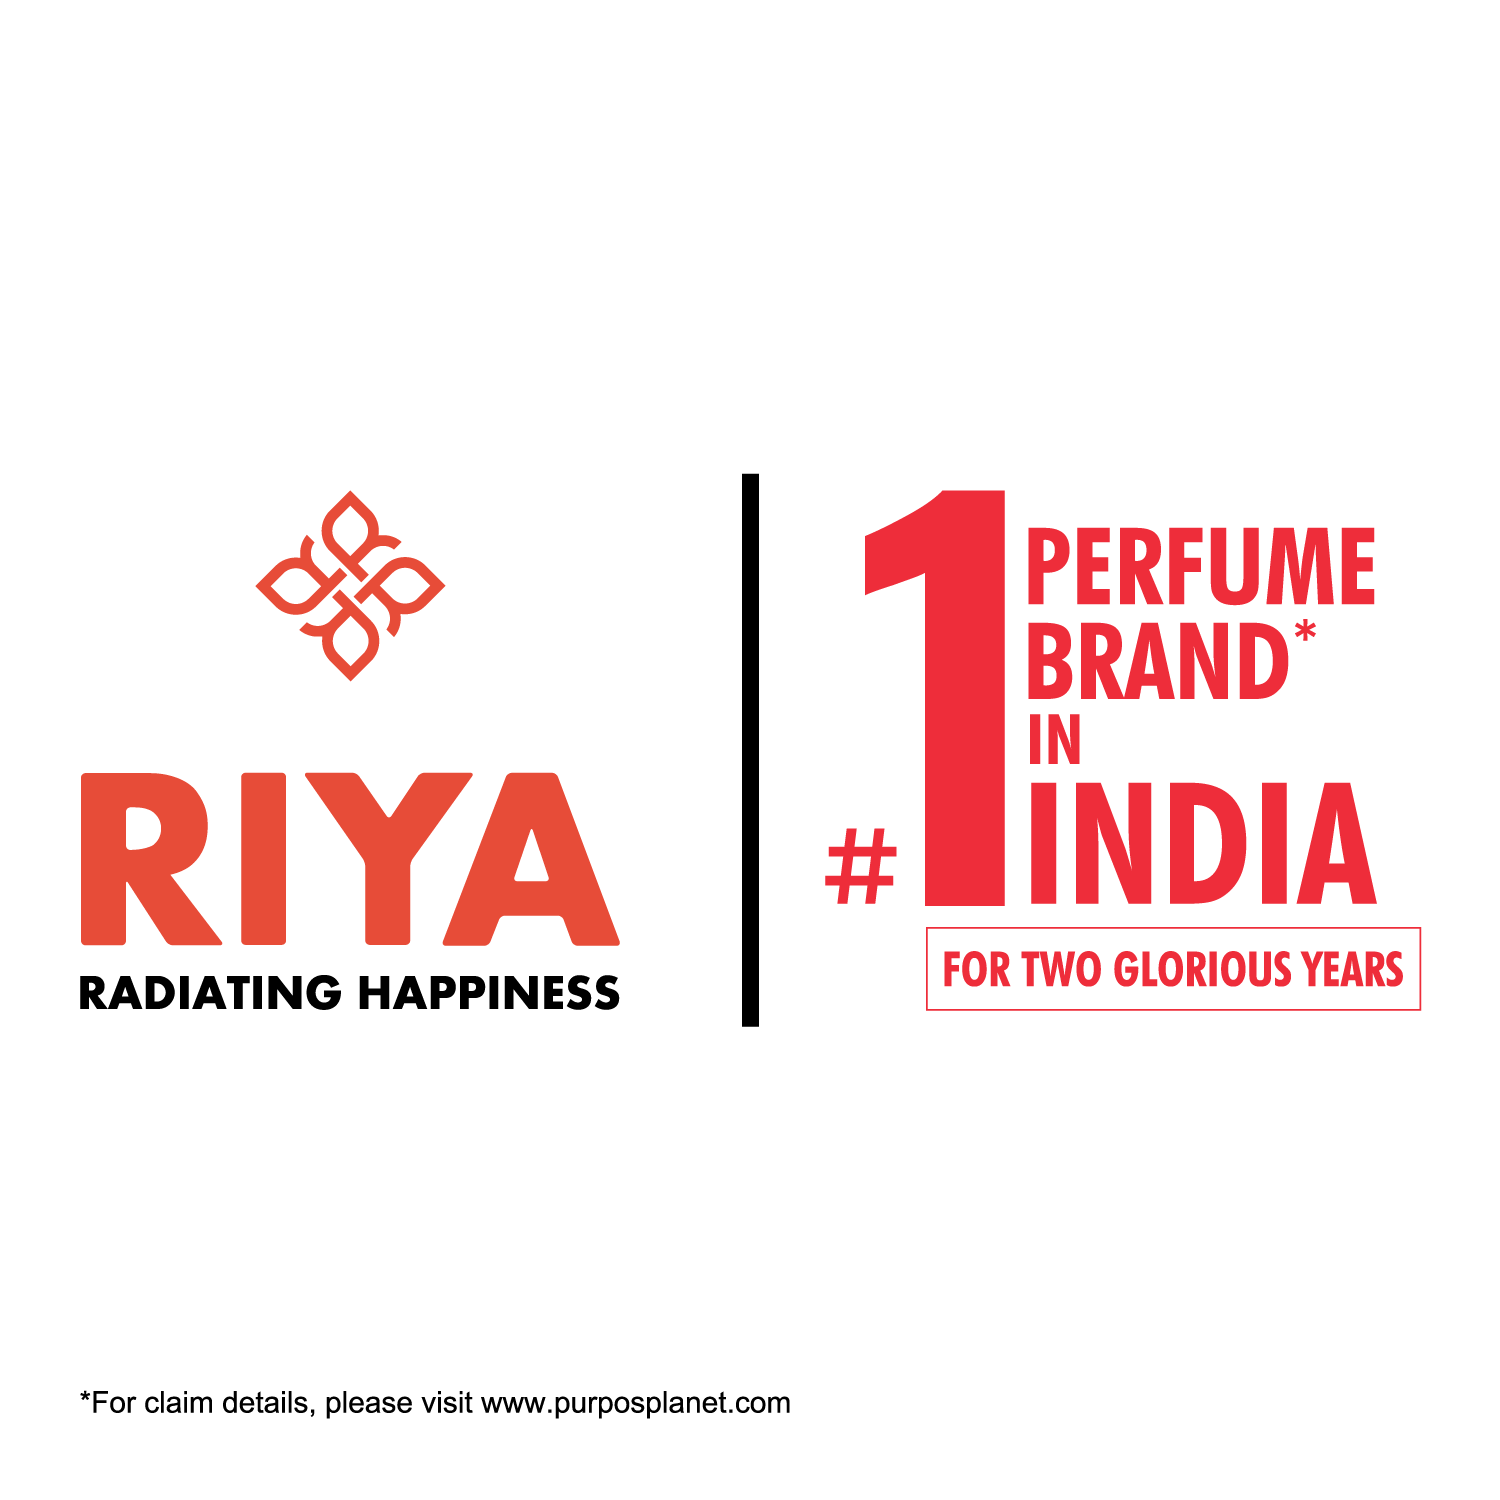 Riya Hum Tum Perfume &amp; Body Spray Combo Pack (100ML + 150ML)